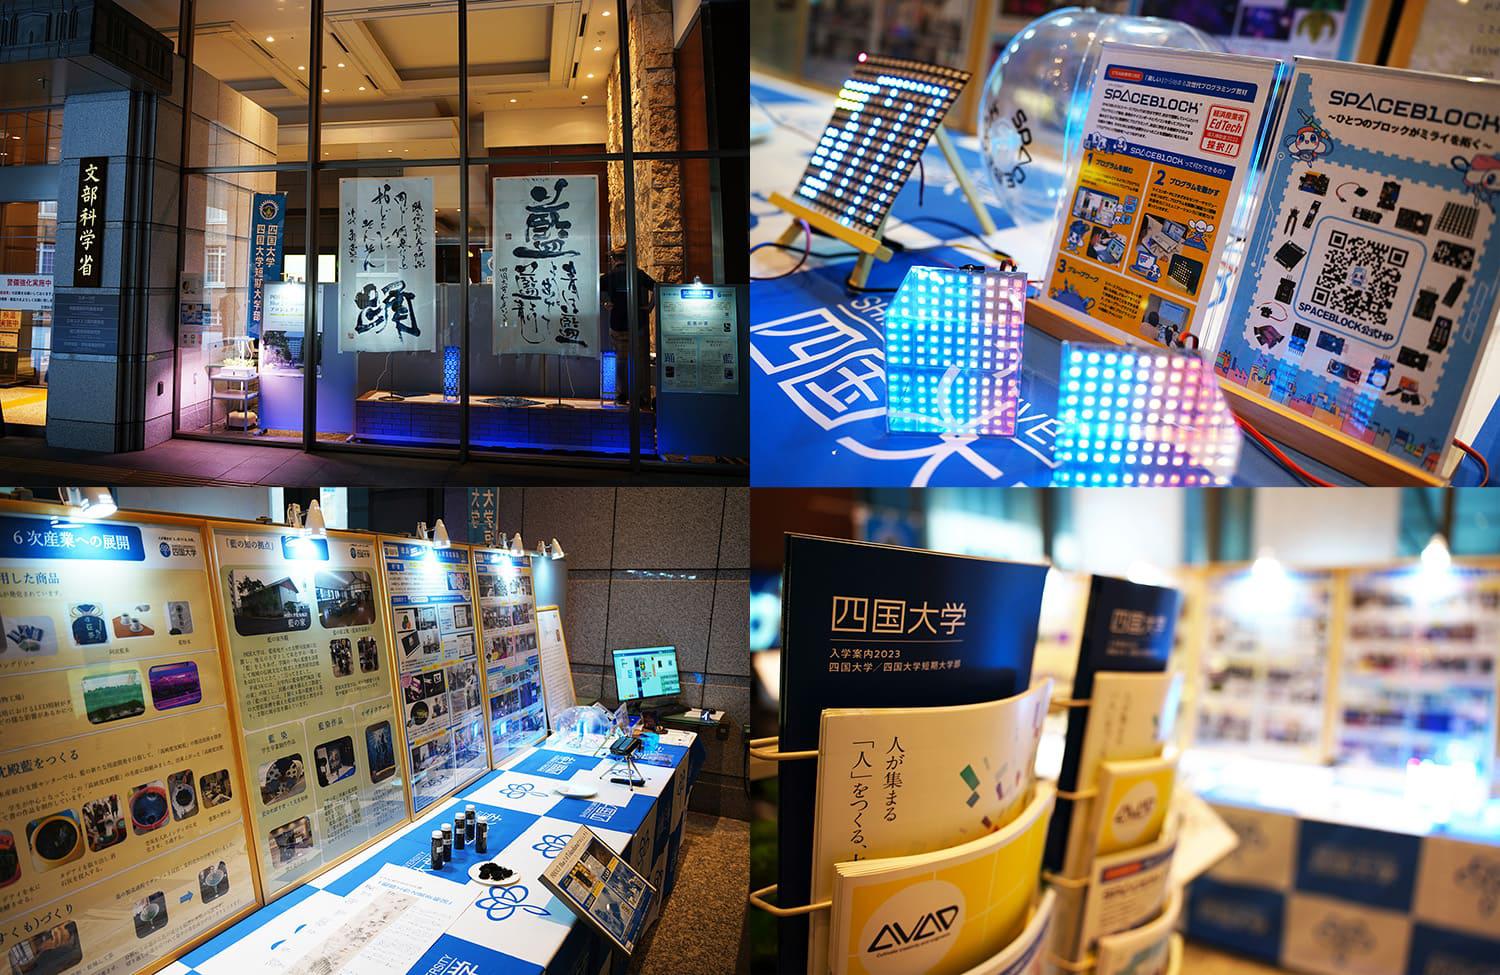 文部科学省 情報ひろば 四国大学 Blue2@Tokushimaプロジェクト特別展示にて、T-LAP事業の活動・研究としてSPACEBLOCKが展示されます！【~7/12・霞が関】